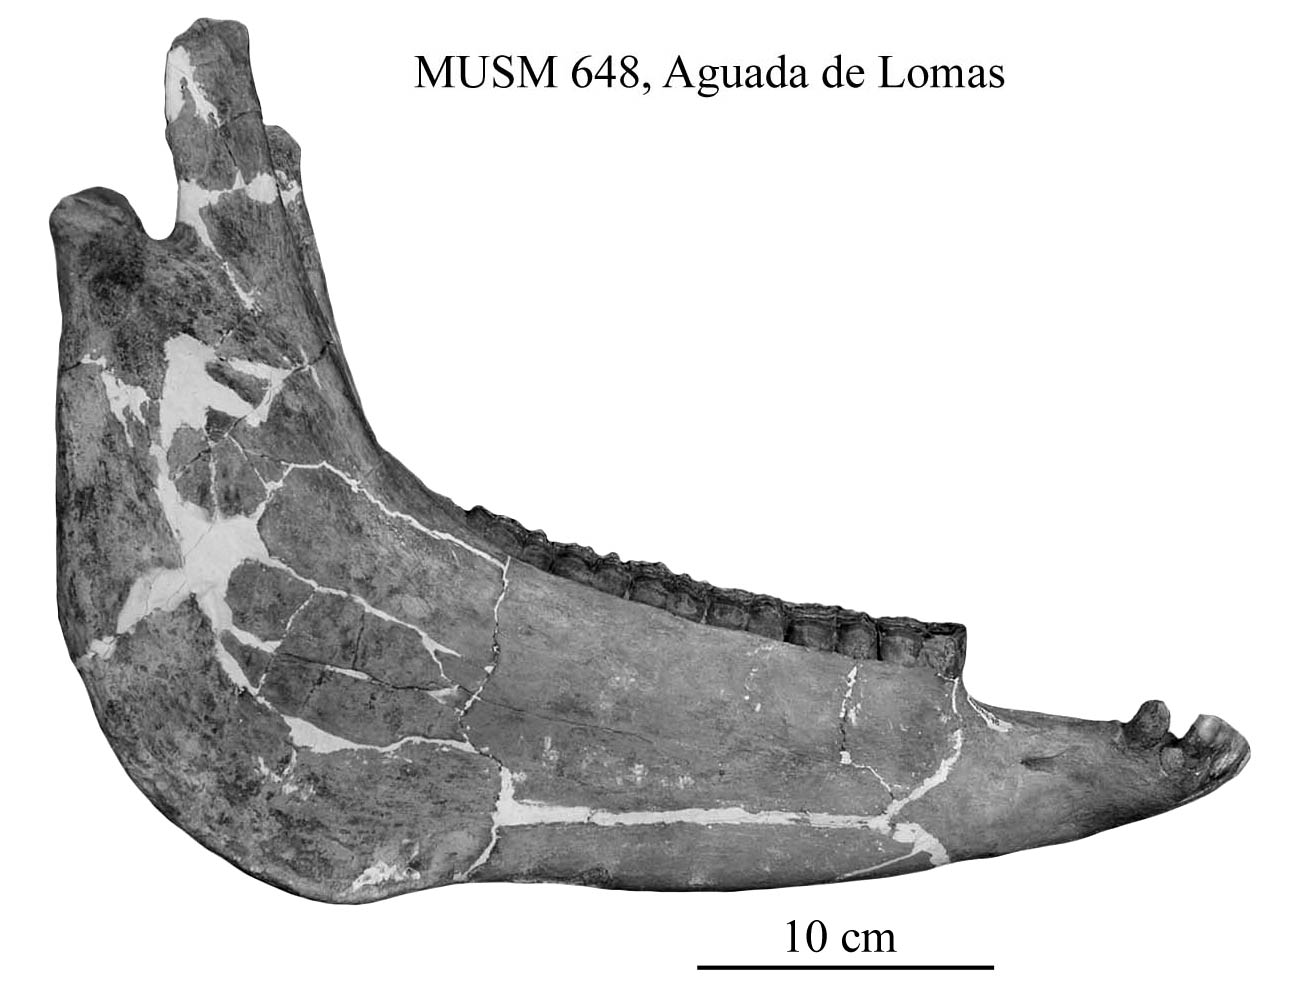 MUSM 648, mandible, profile